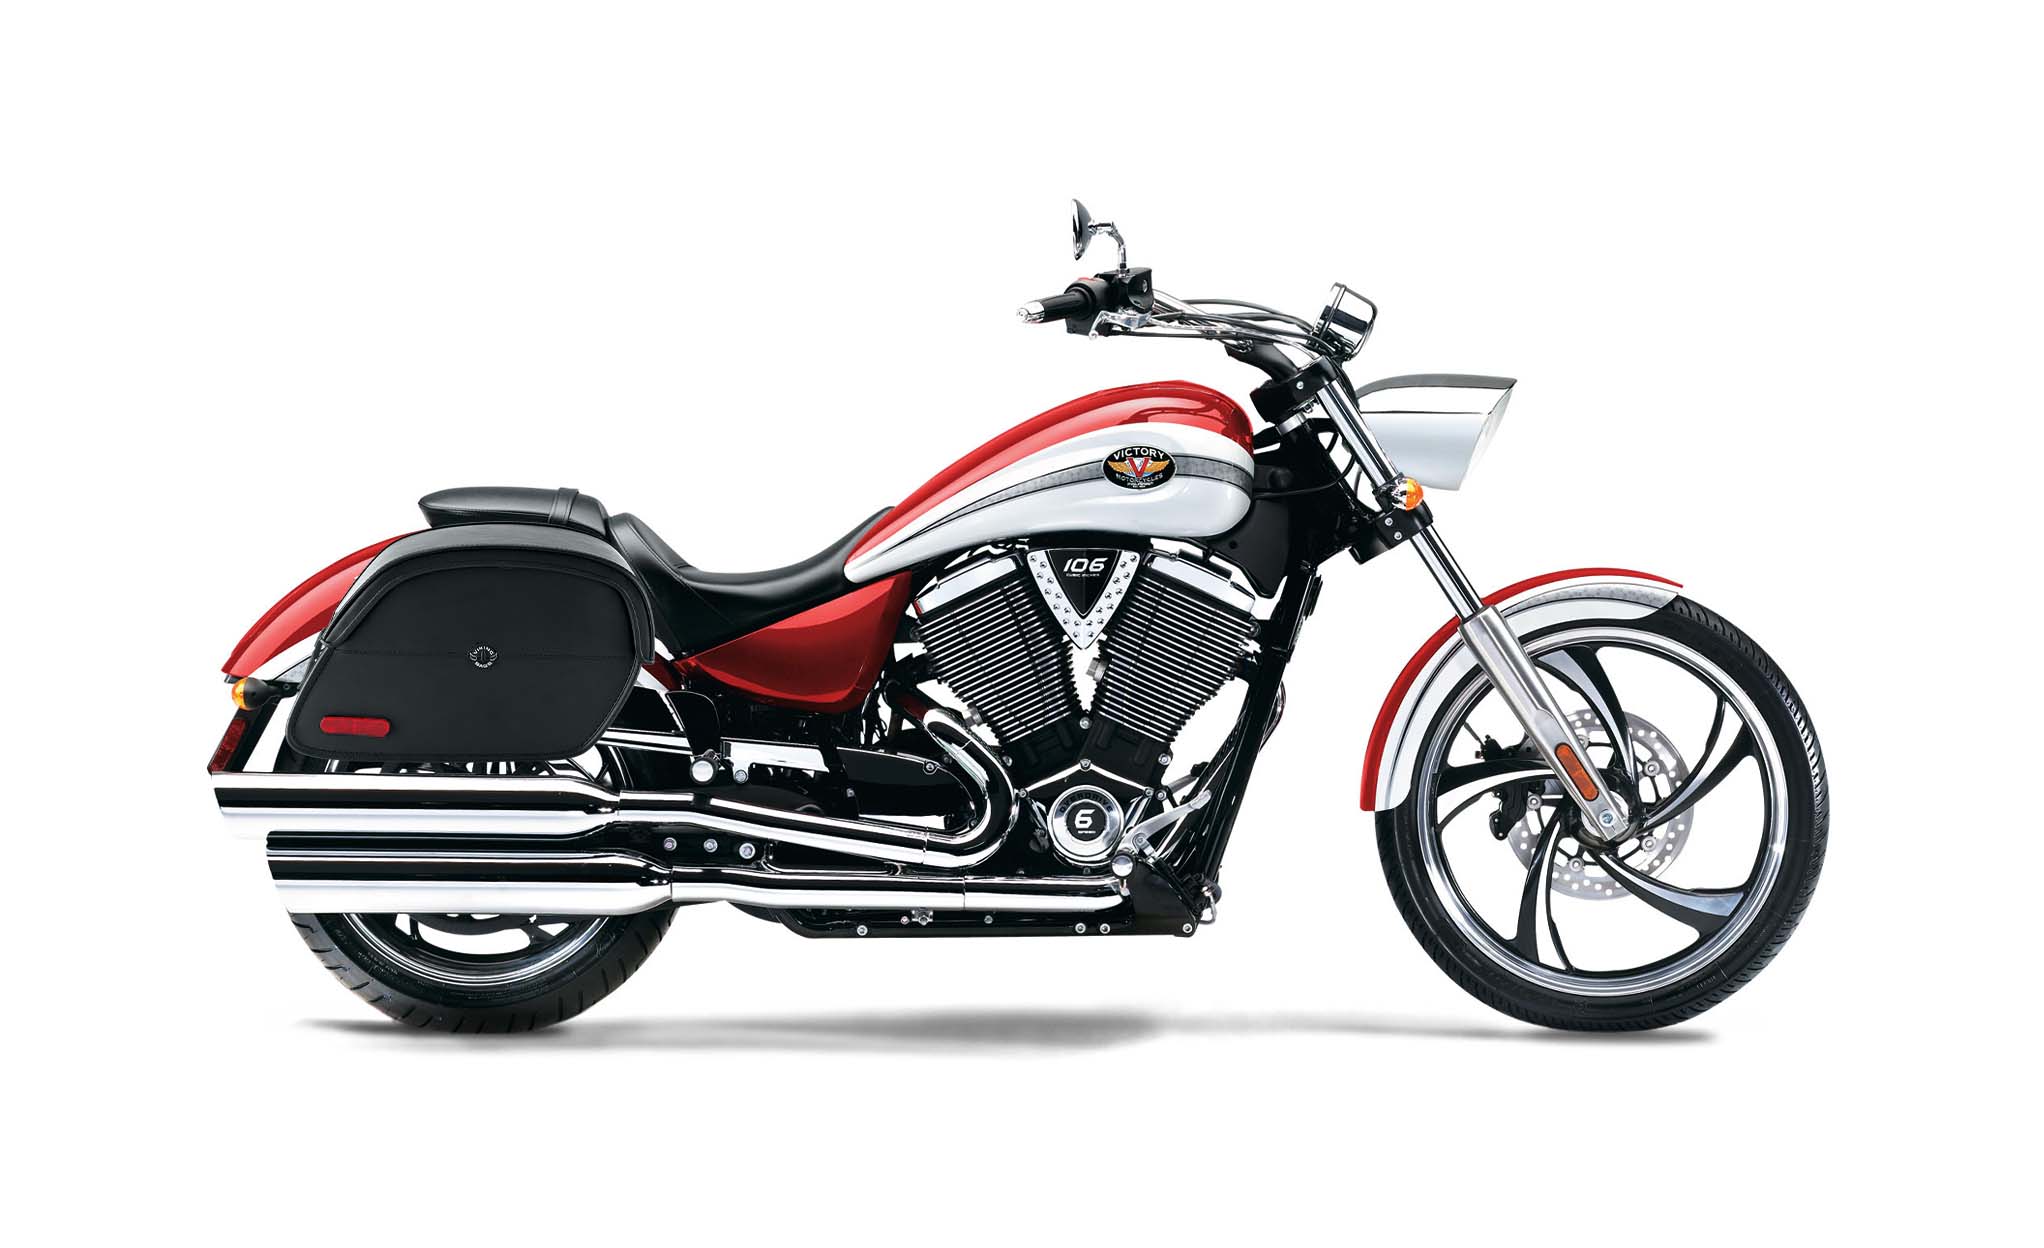 Viking California Large Victory Vegas Leather Motorcycle Saddlebags on Bike Photo @expand